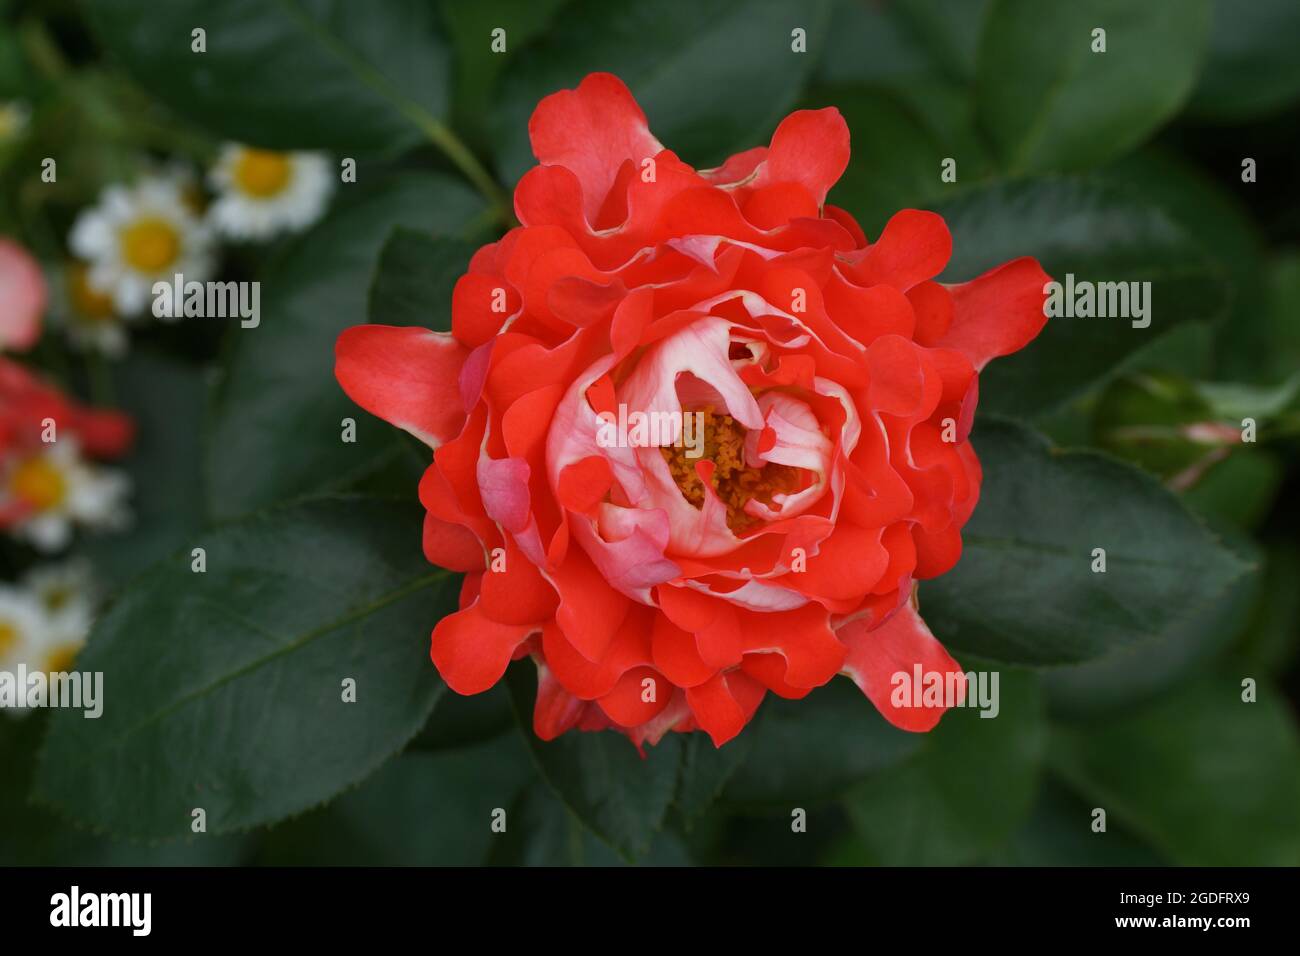 Rosa Candy Ruffles wunderschöne Korallenrose Nahaufnahme. Eine Blume, in einem Garten in natürlichen Bedingungen im Grünen, unter dem offenen Himmel. Stockfoto